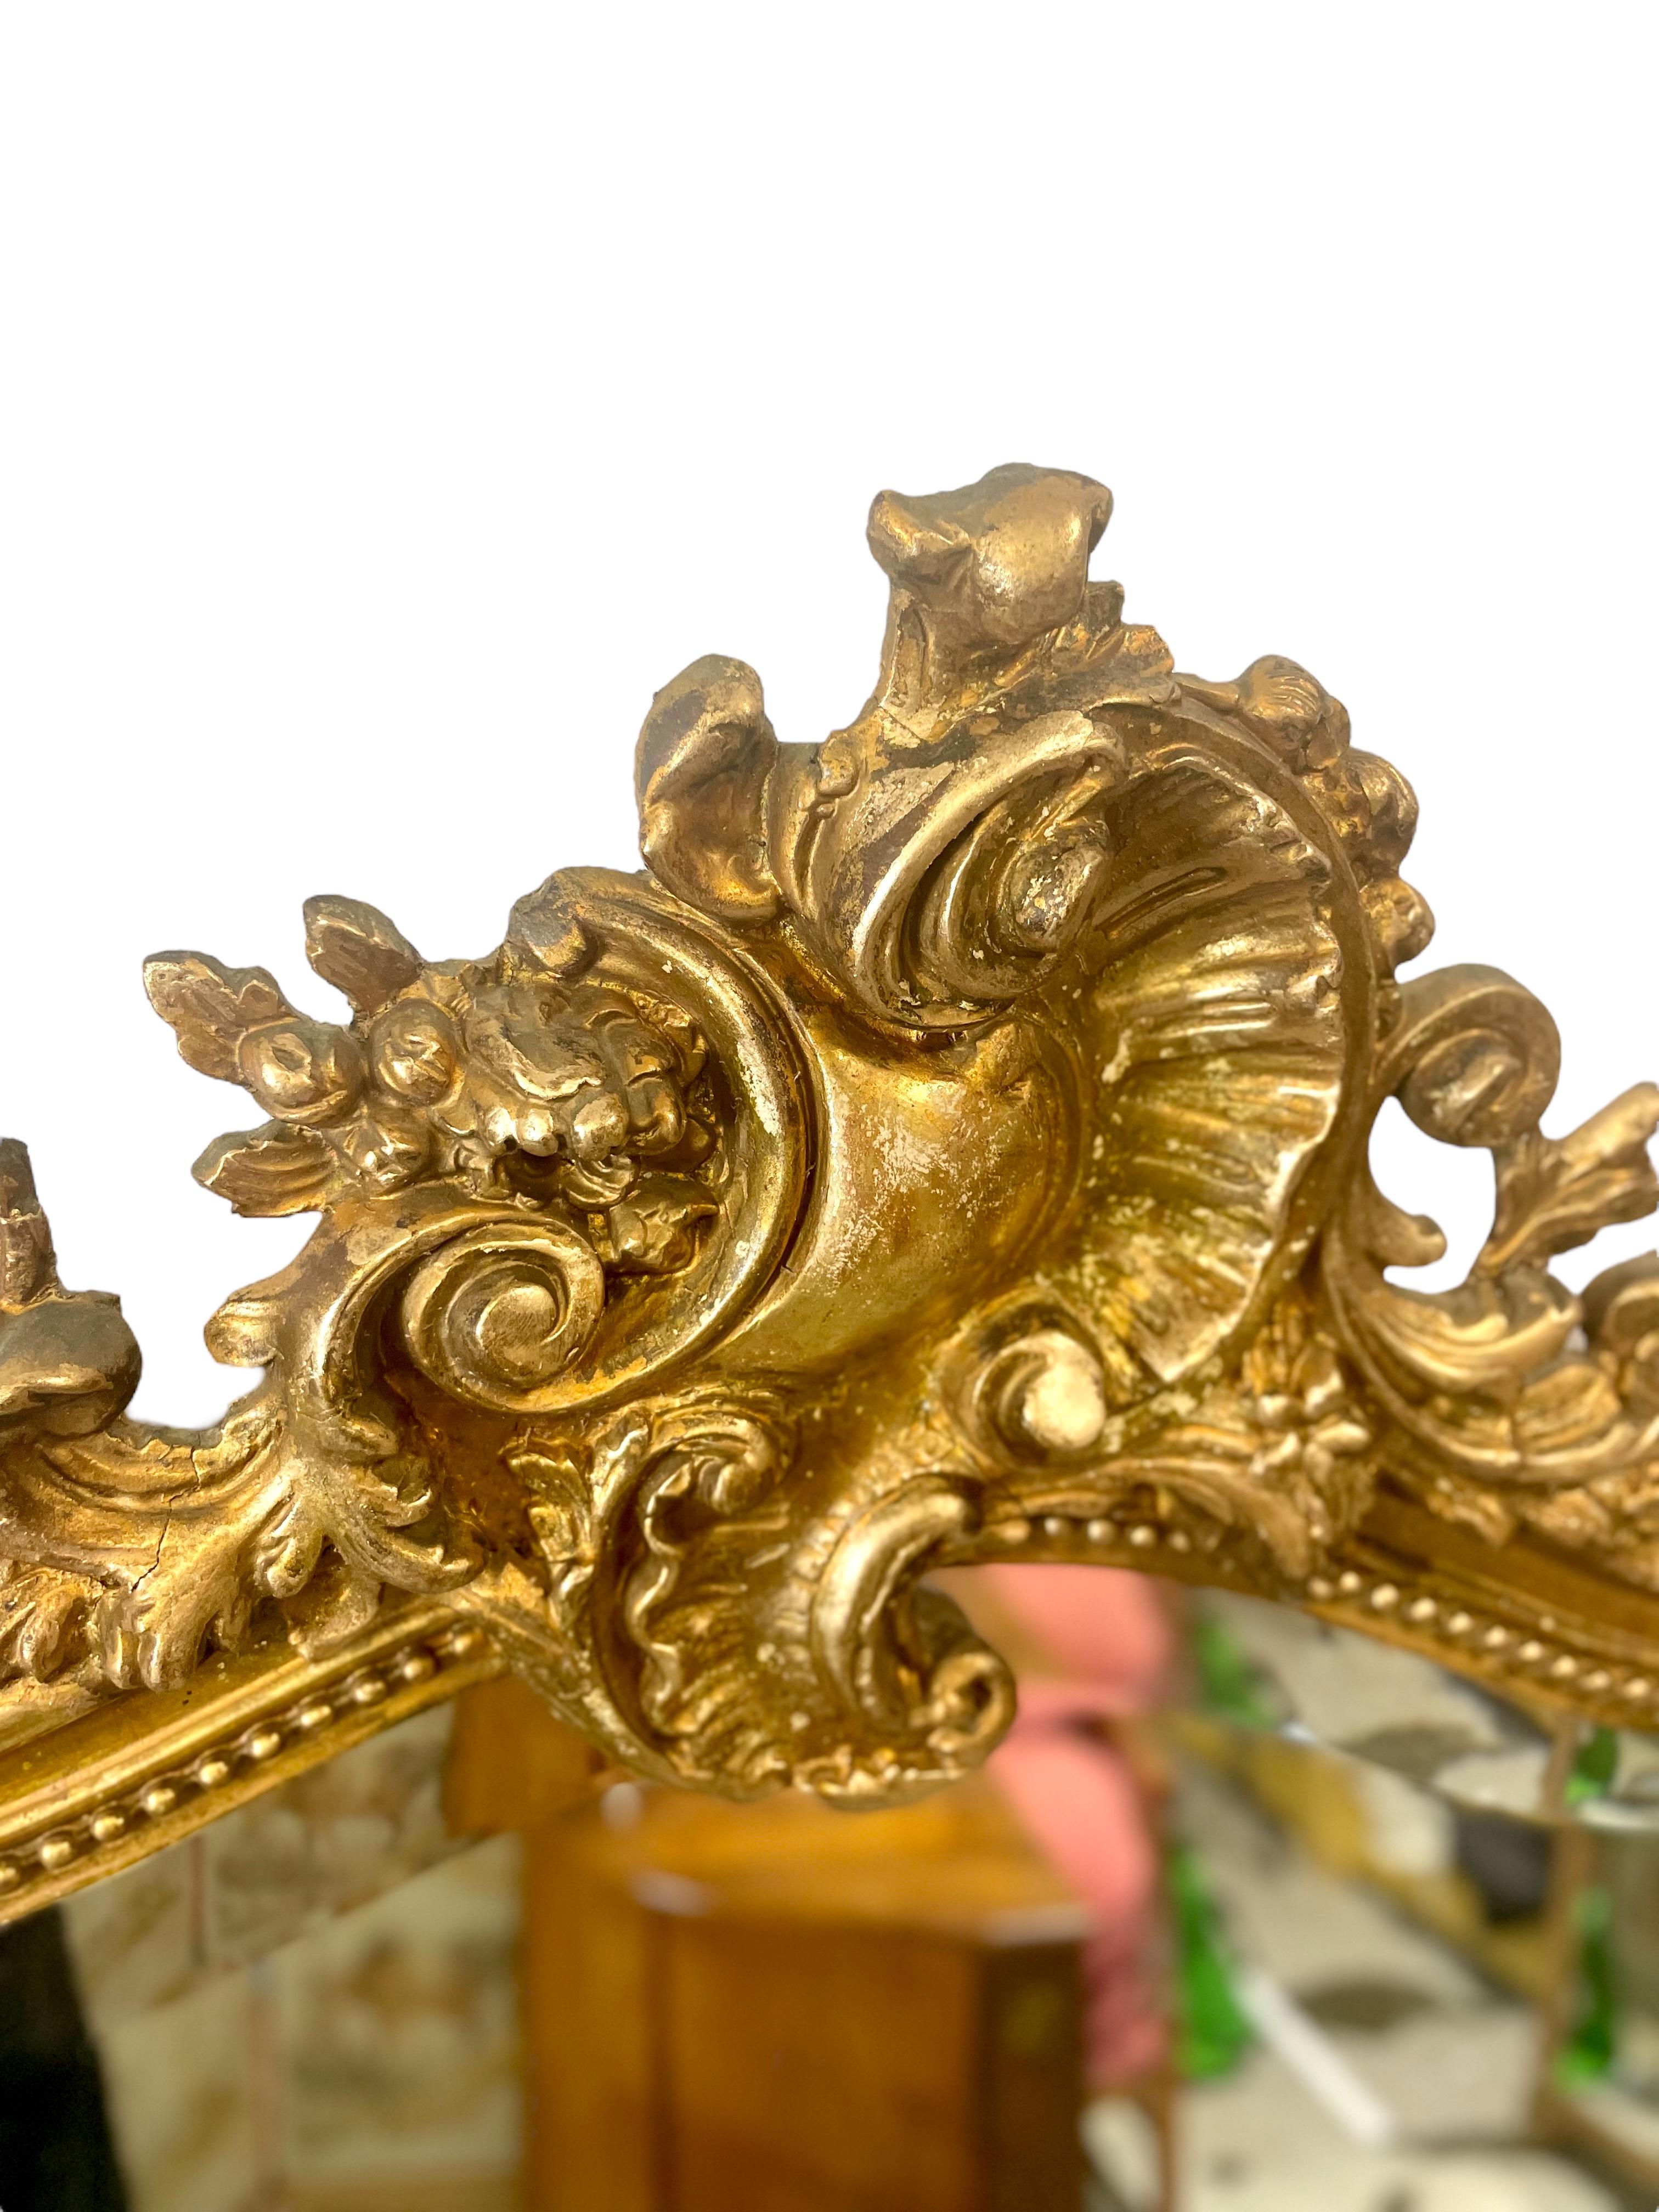 Ein atemberaubender Spiegel im Louis XV-Stil aus Holz und vergoldetem Stuck aus dem 19. Jahrhundert. Ein kunstvoll geschnitztes, überdimensionales, asymmetrisches Wappen aus einer Blattschnecke und stilisierten Rocaille-Motiven ziert die Spitze. Der